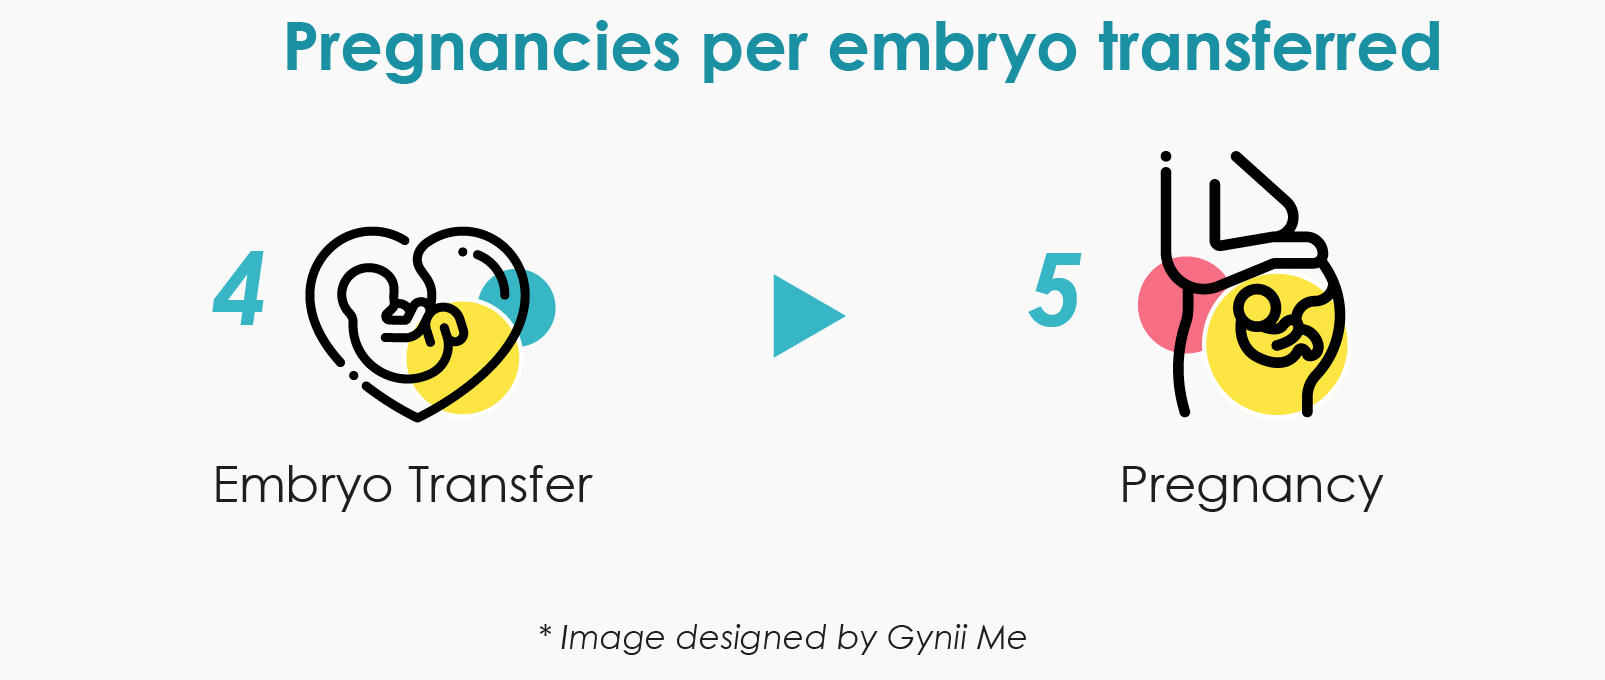 Pregnancy per embryo transferred